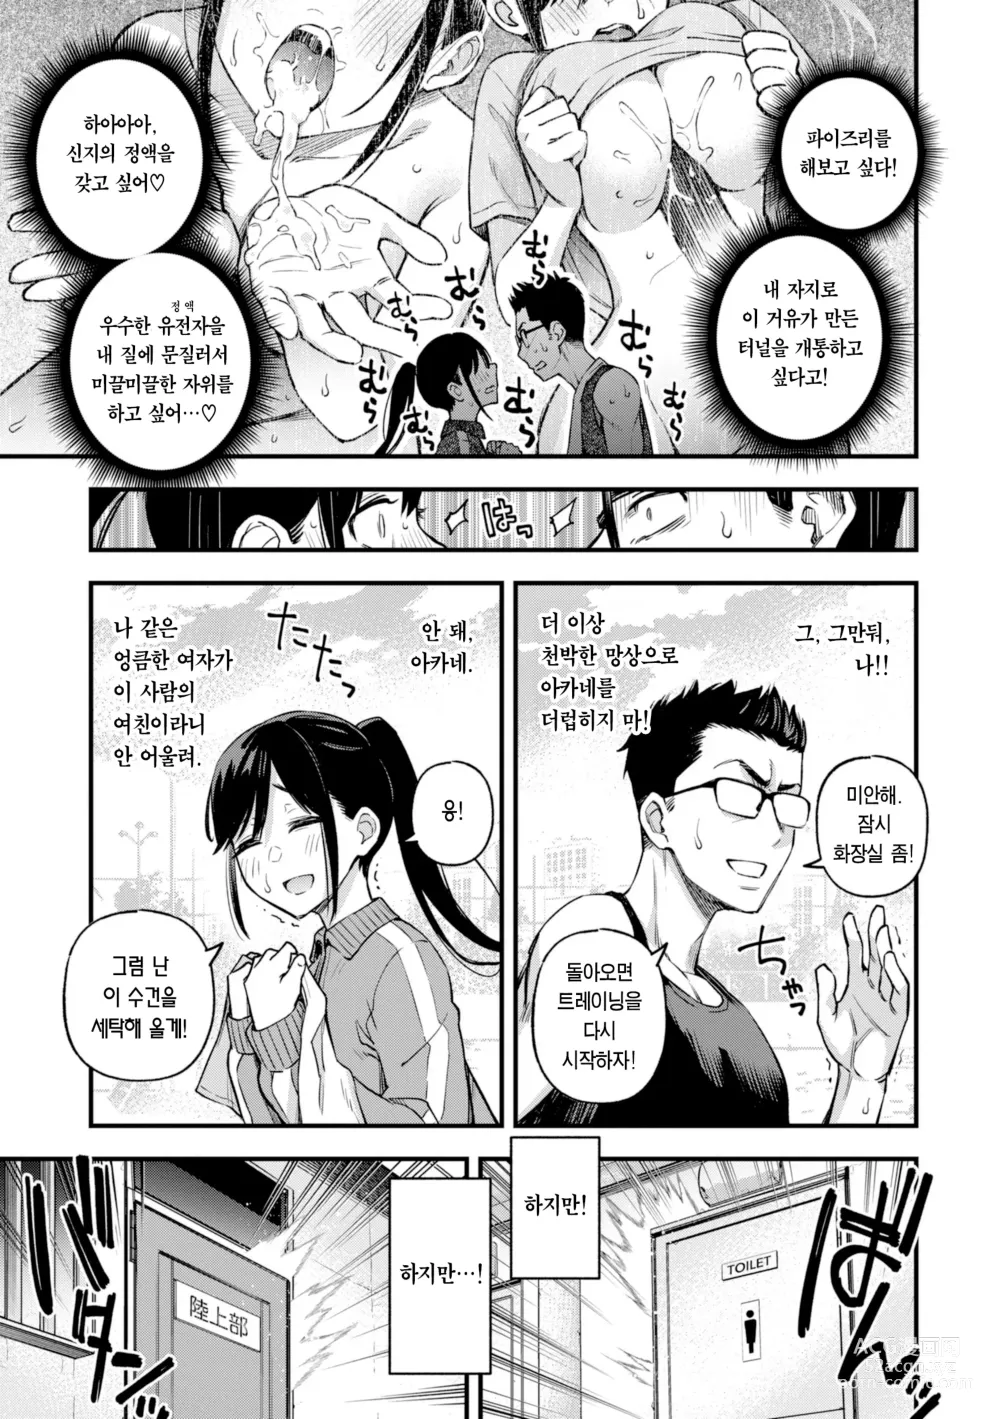 Page 15 of manga 처녀는 발정나면 안 되나요? (decensored)